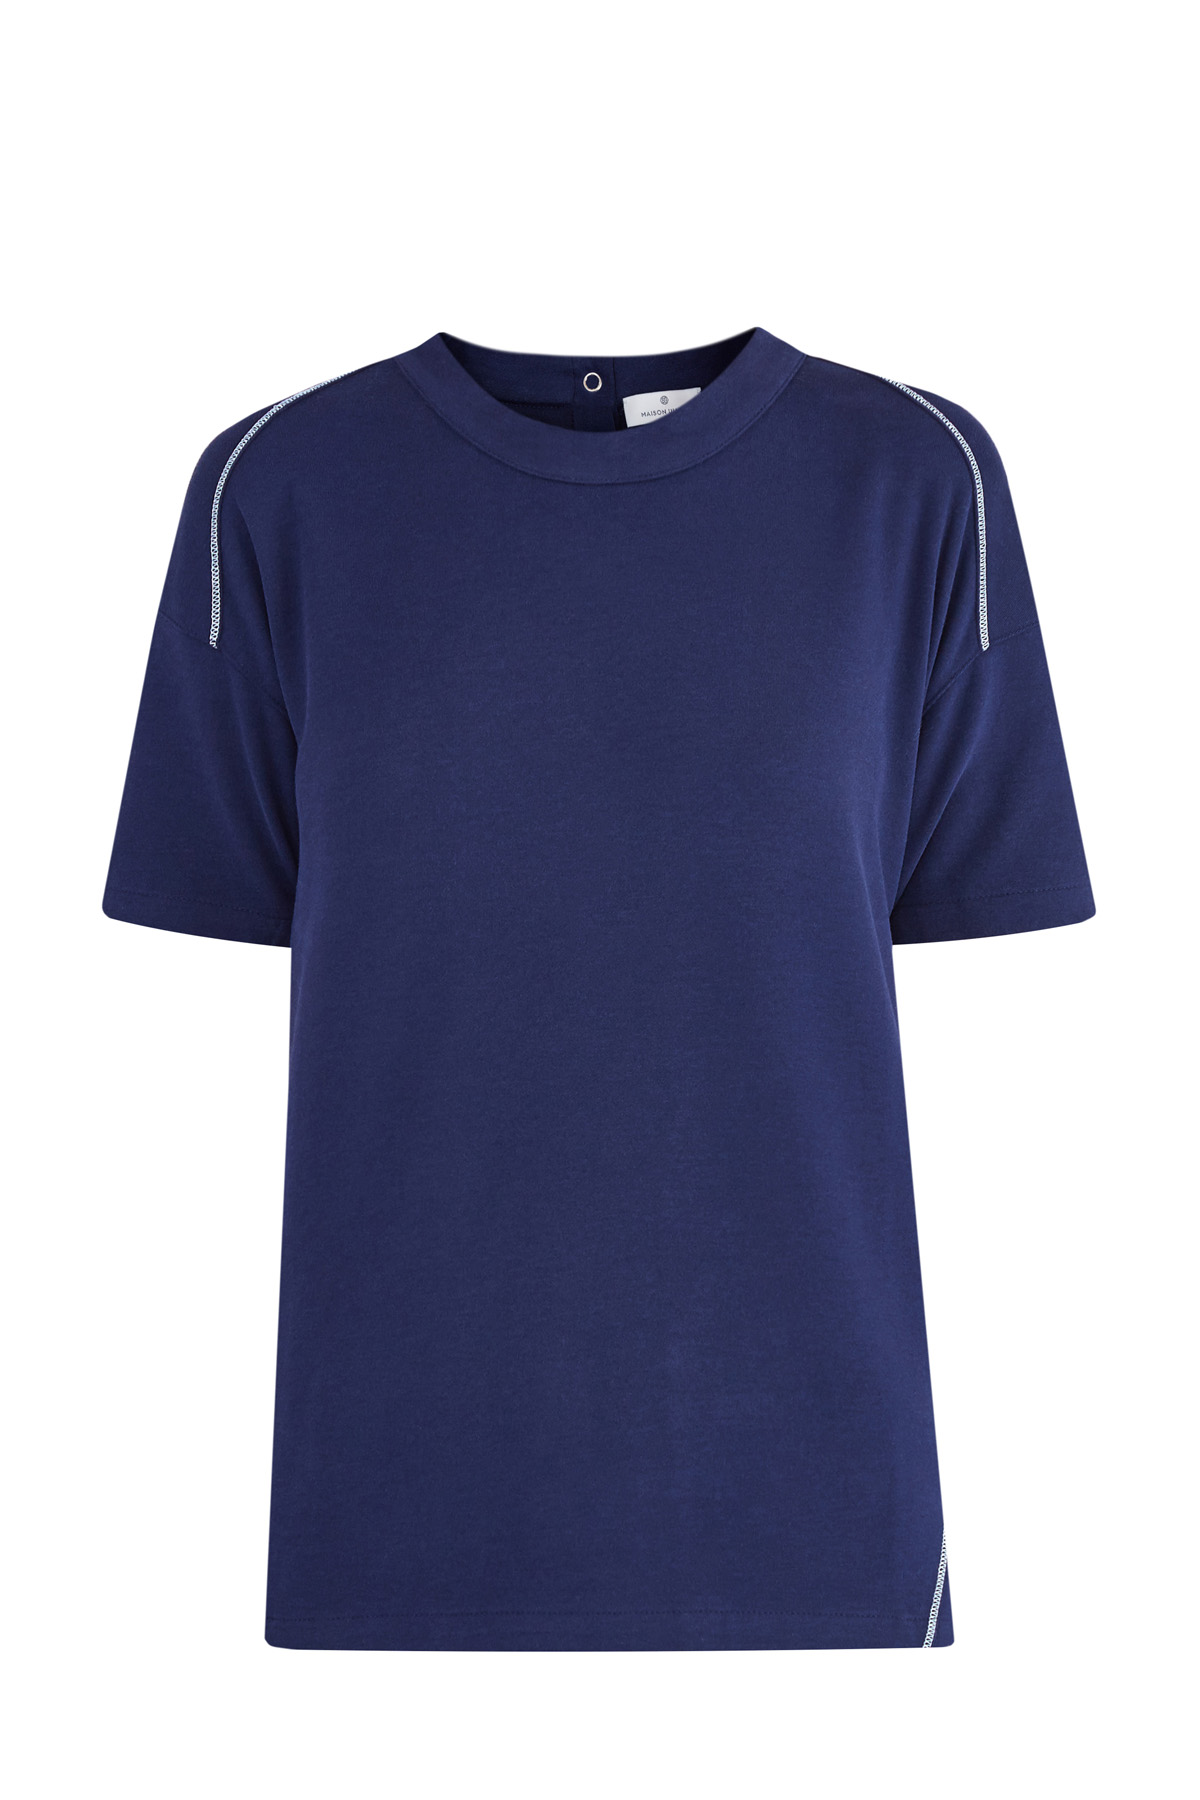 Футболка в спортивном стиле с пуговичной застежкой и контрастными швами MAISON ULLENS, цвет синий, размер 36;38 - фото 1